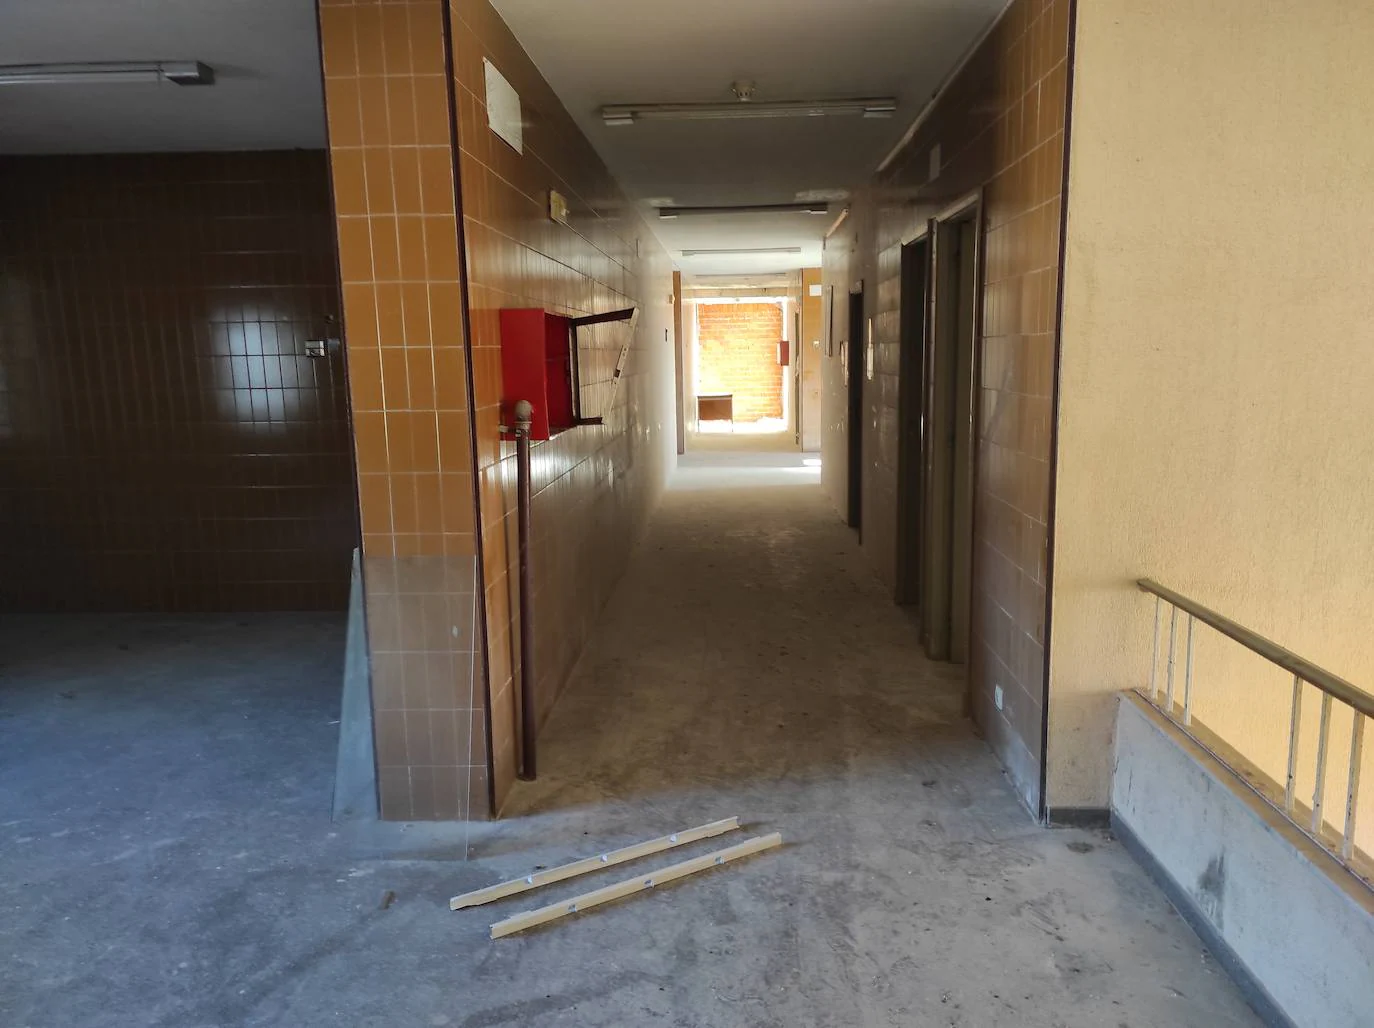 Fotos: Limpieza del edificio de la Segurida Social